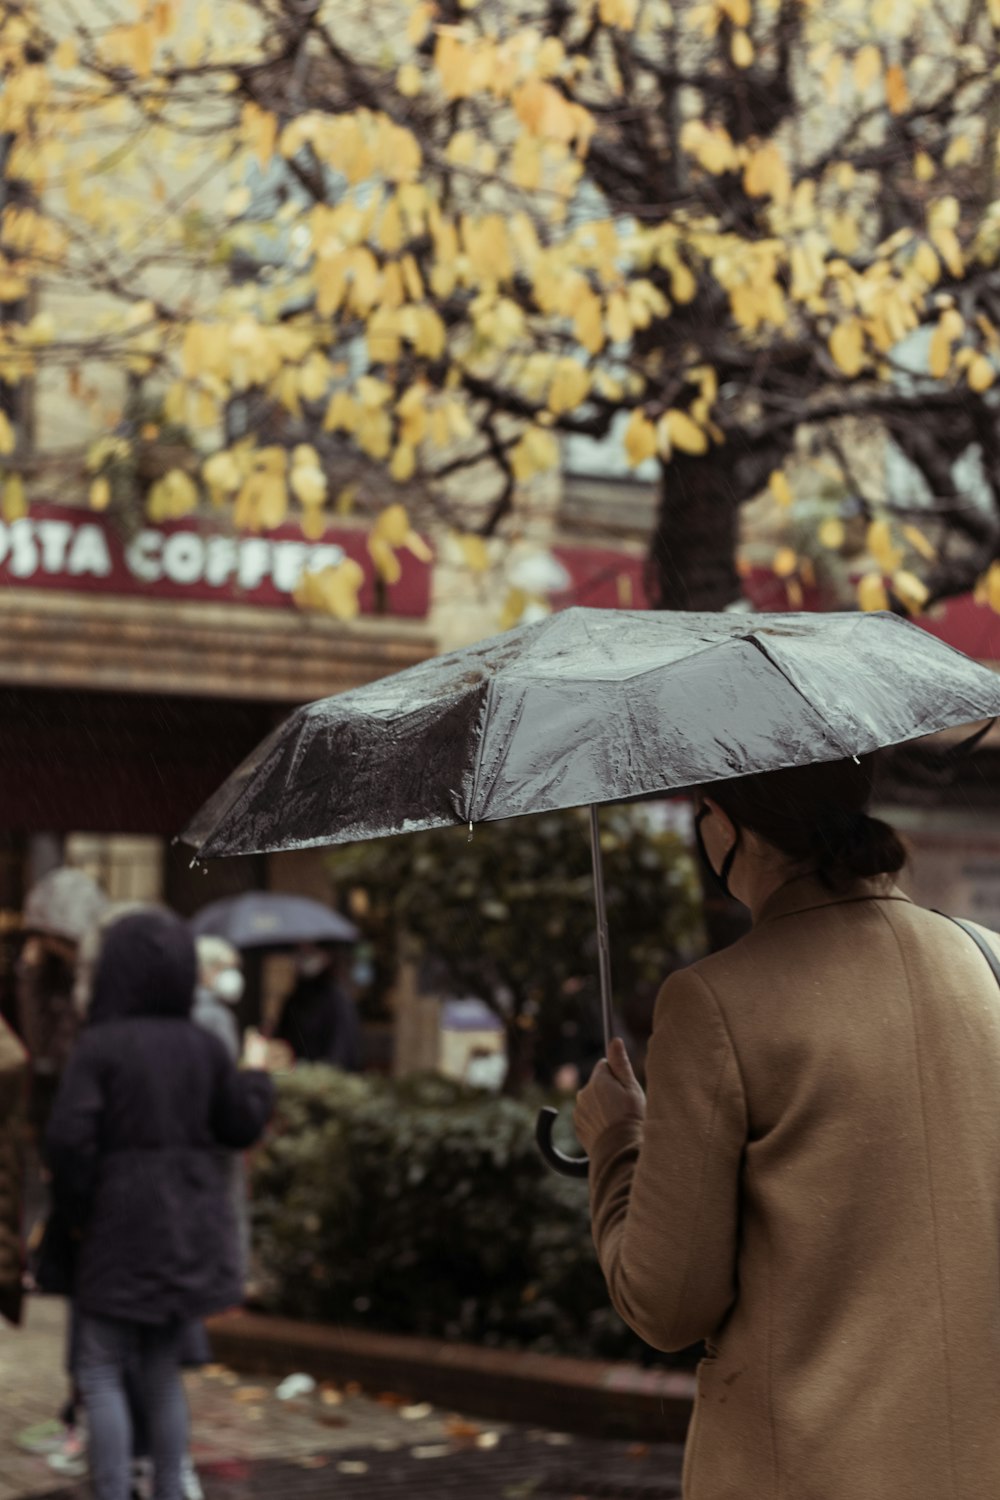 갈색 코트를 입은 사람이 낮에 보도를 걷고 있는 우산을 들고 있다